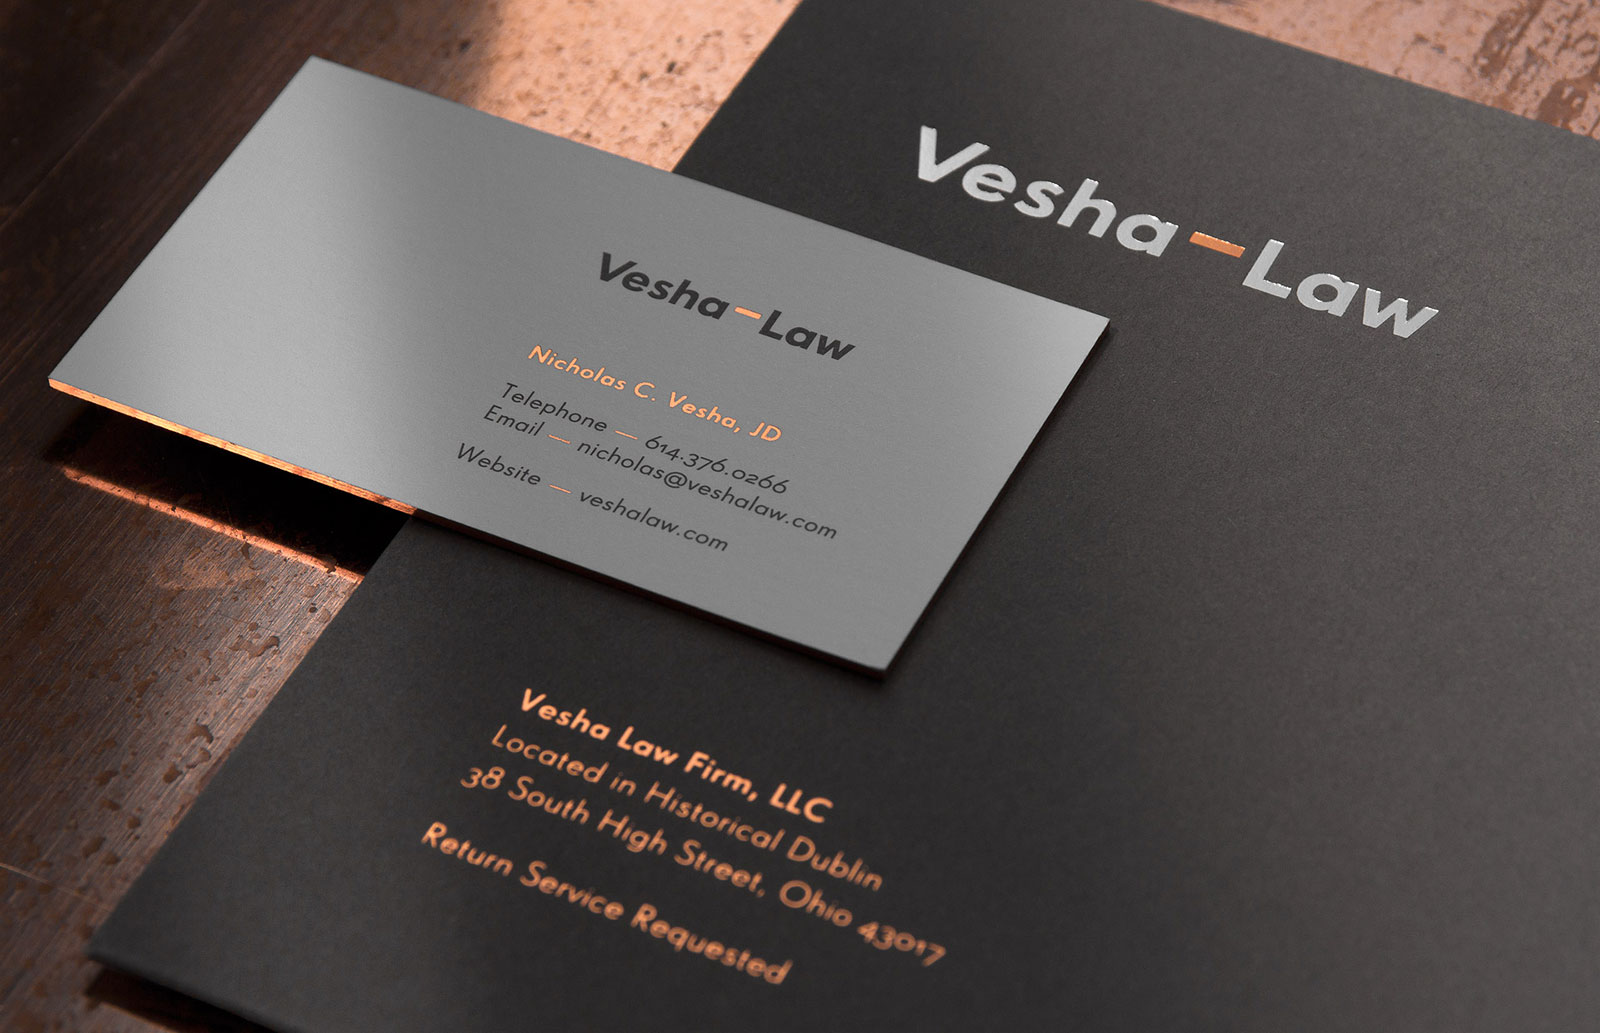 Lawyer Vesh律师事务所品牌形象设计